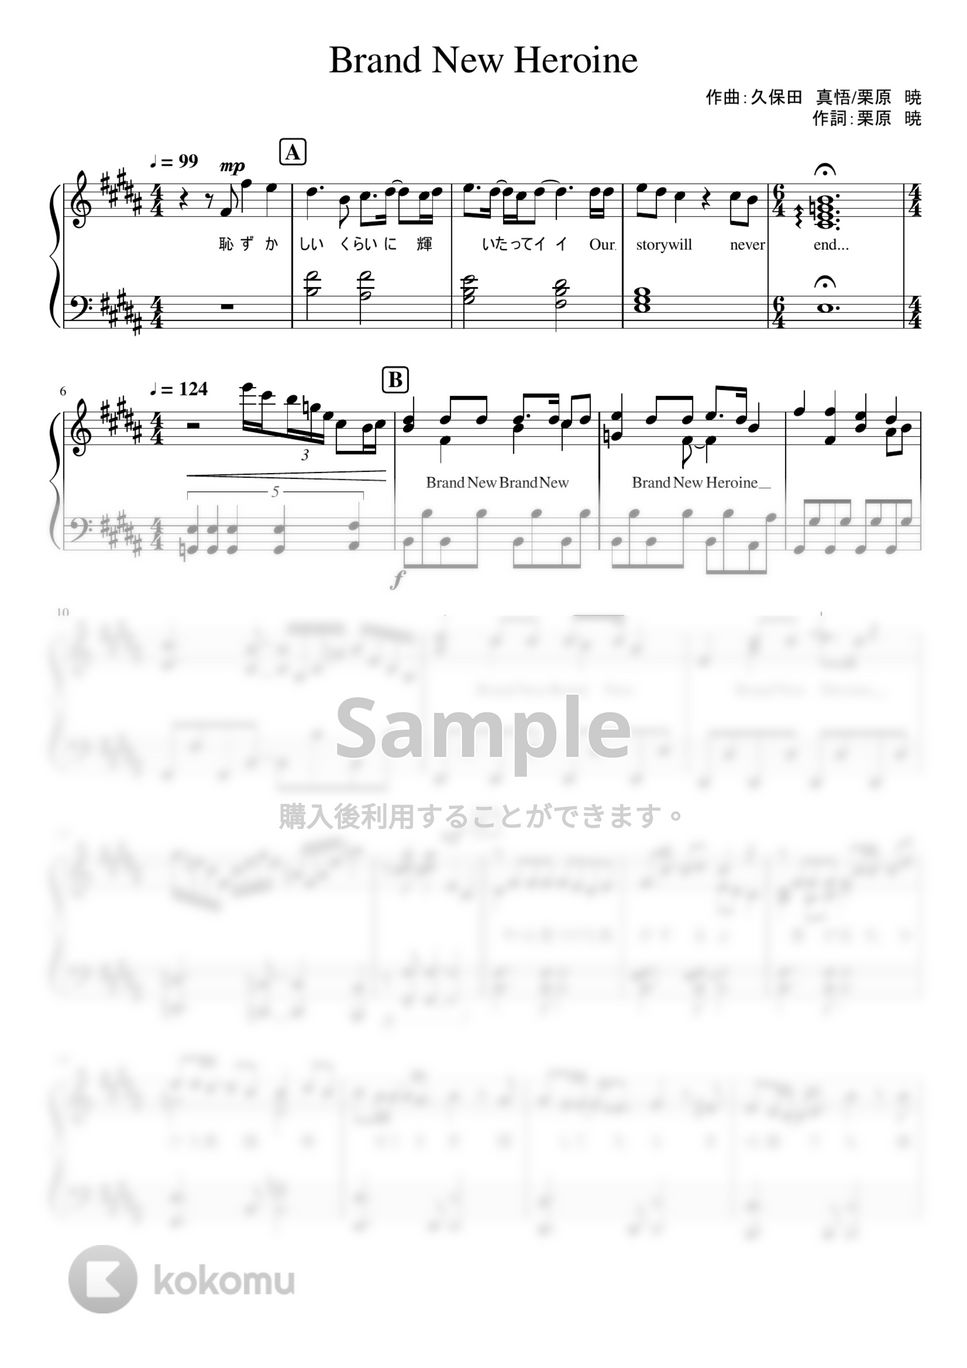 なにわ男子 - Brand New Heroine (1stアルバム「1st Love」収録曲。) by ピアノぷりん